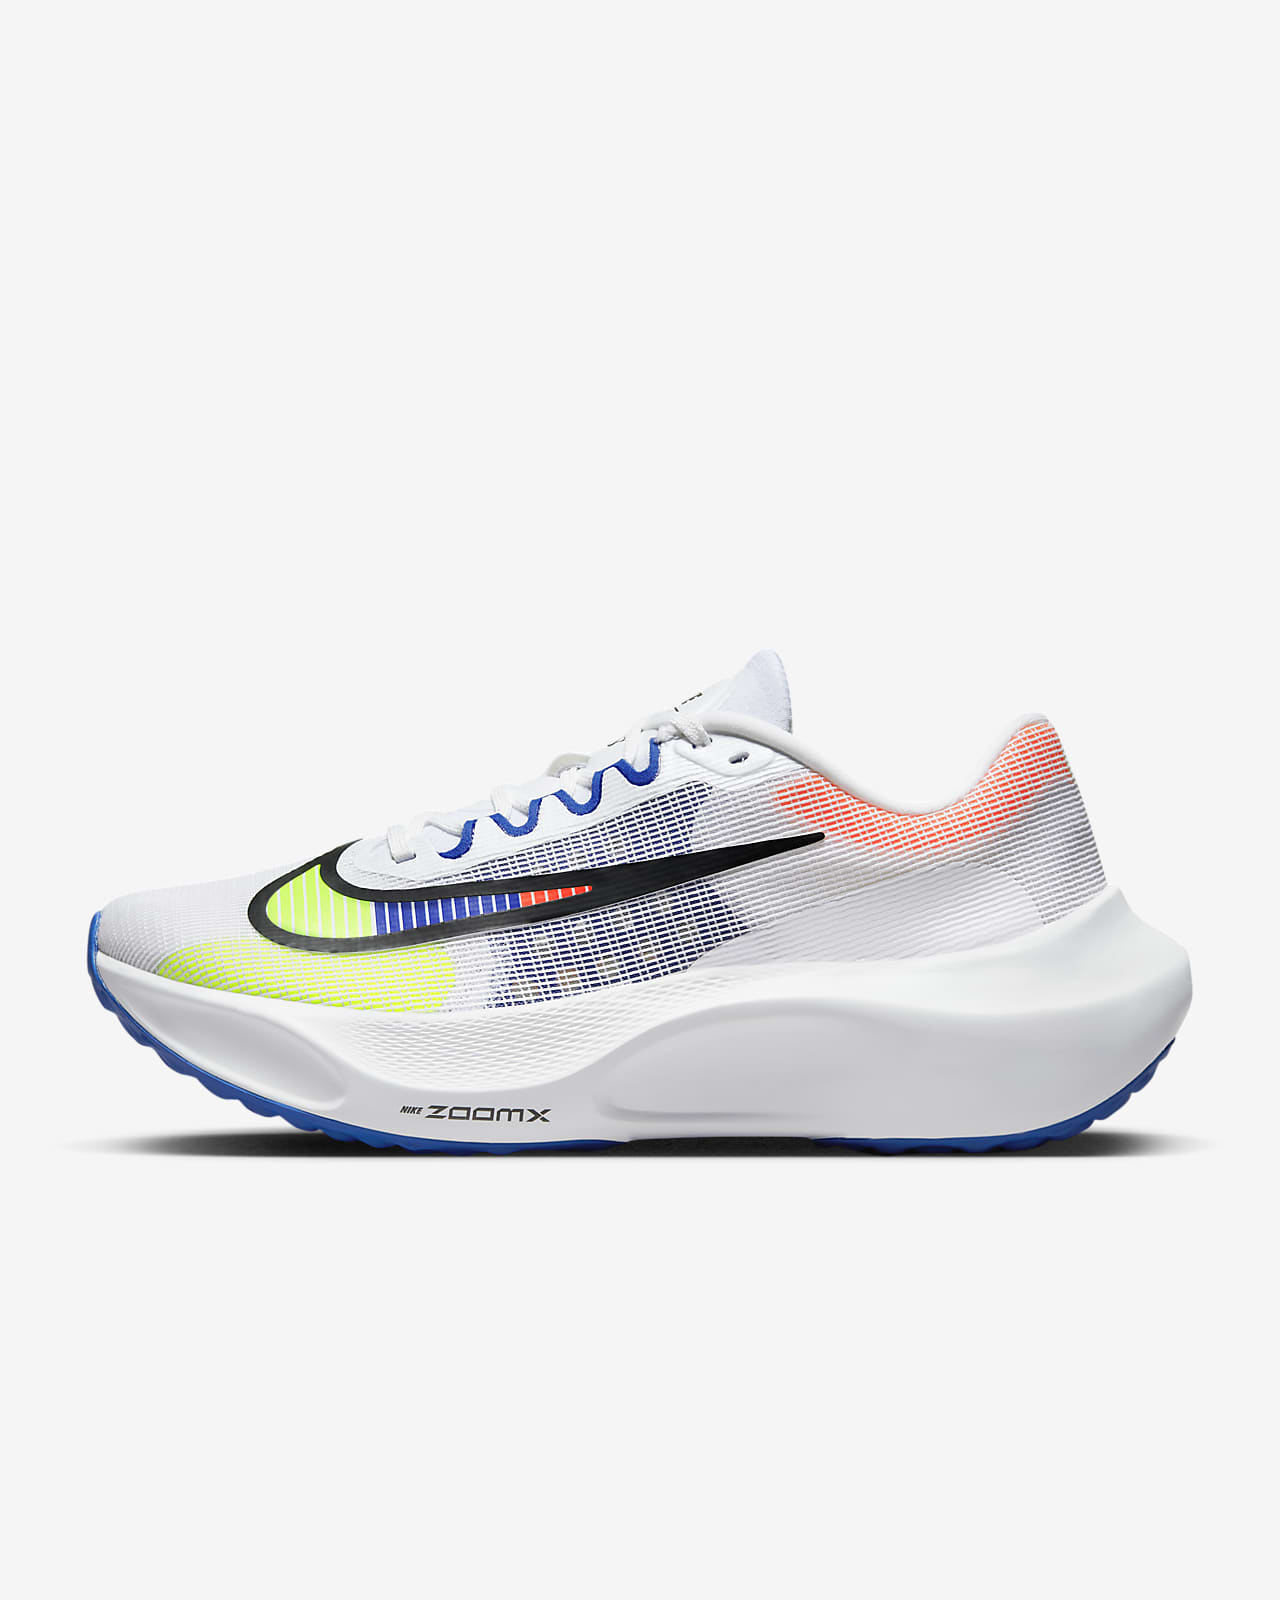 Nike Zoom Fly 5 Premium Erkek Yol Koşu Ayakkabısı